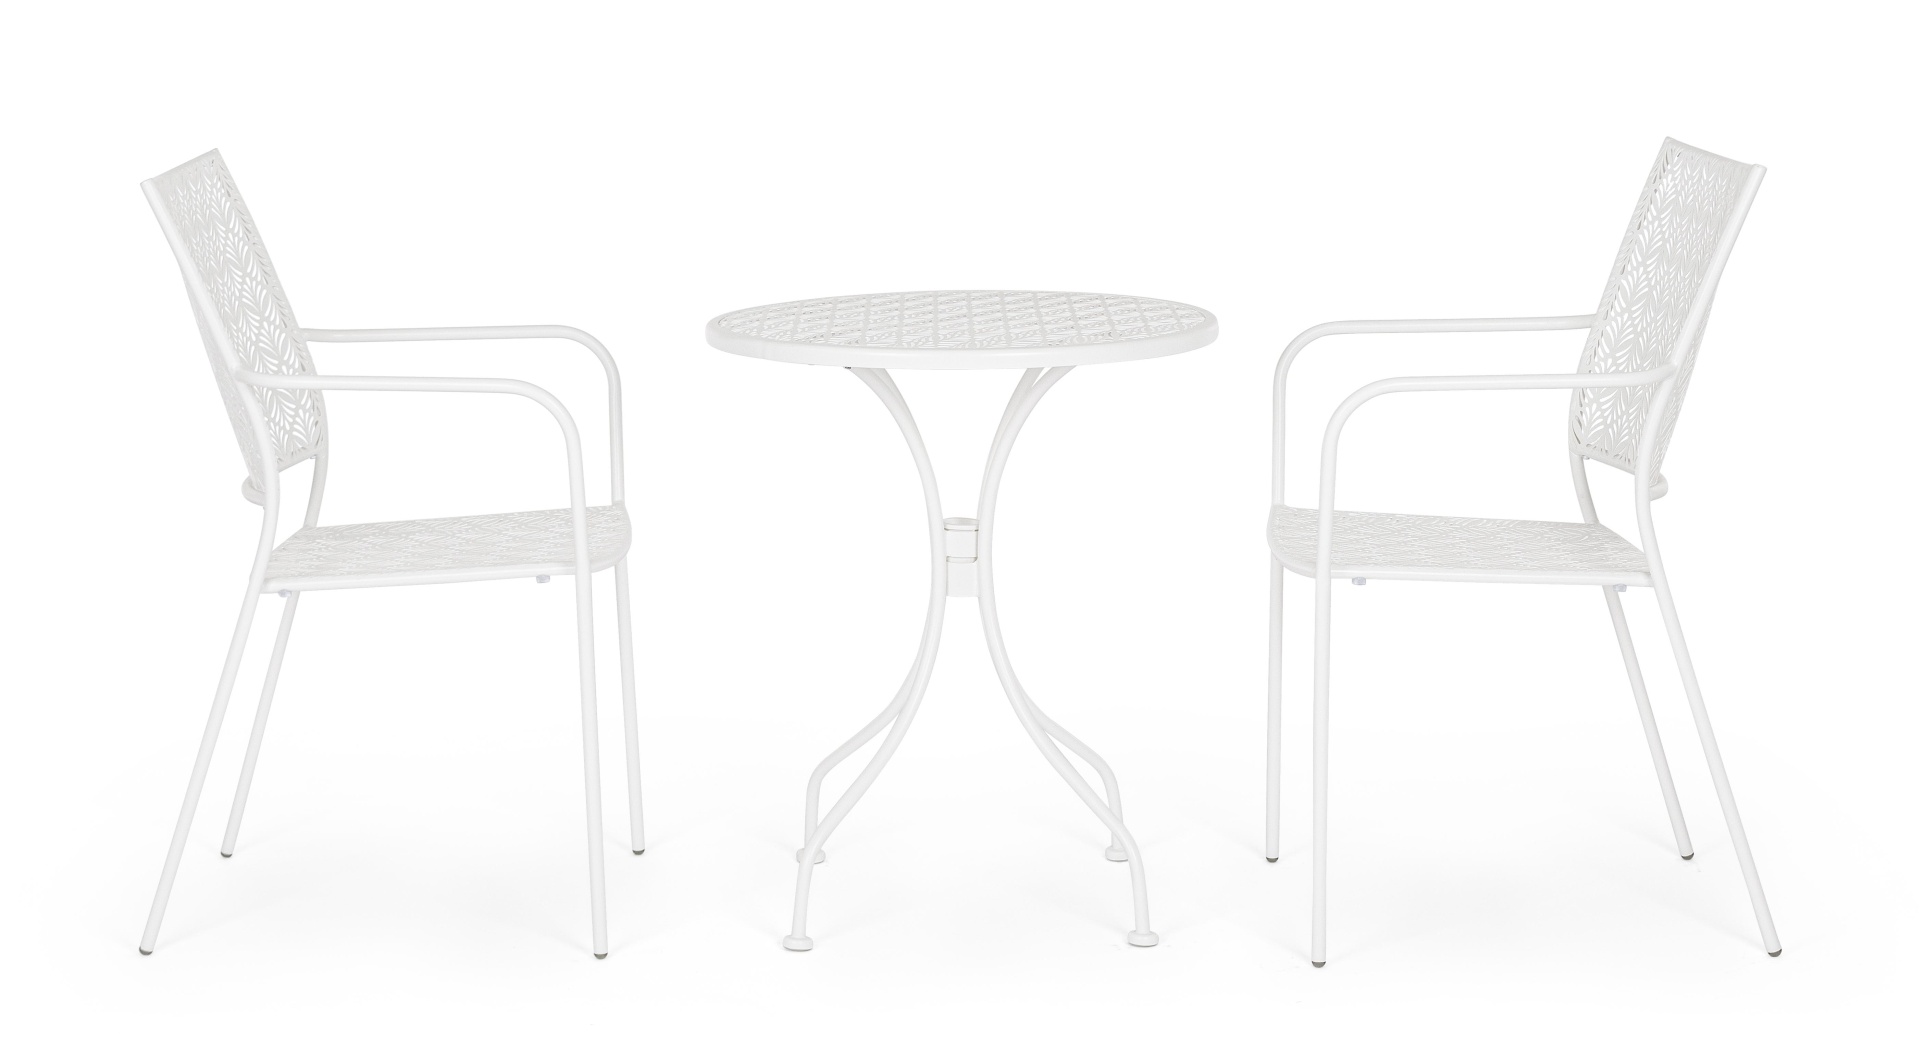 Der Gartentisch Lizette überzeugt mit seinem klassischen Design. Gefertigt wurde er aus Aluminium, welches einen weißen Farbton besitzt. Das Gestell ist aus auch Aluminium und hat eine weiße Farbe. Der Tisch verfügt über einen Durchmesser von 60 cm und is